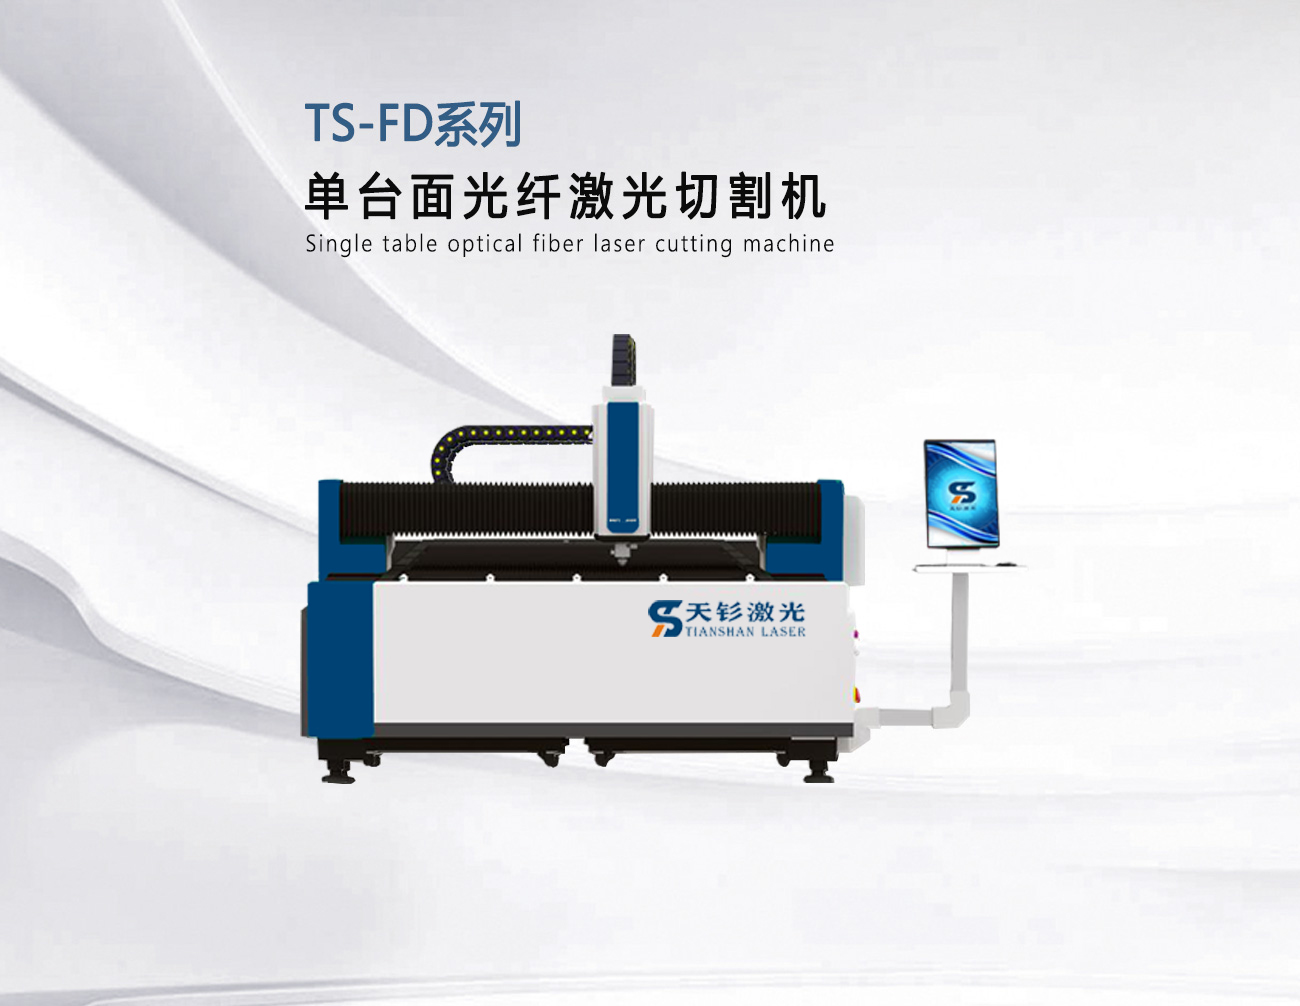 TS-FD系列单台面光纤激光切割机